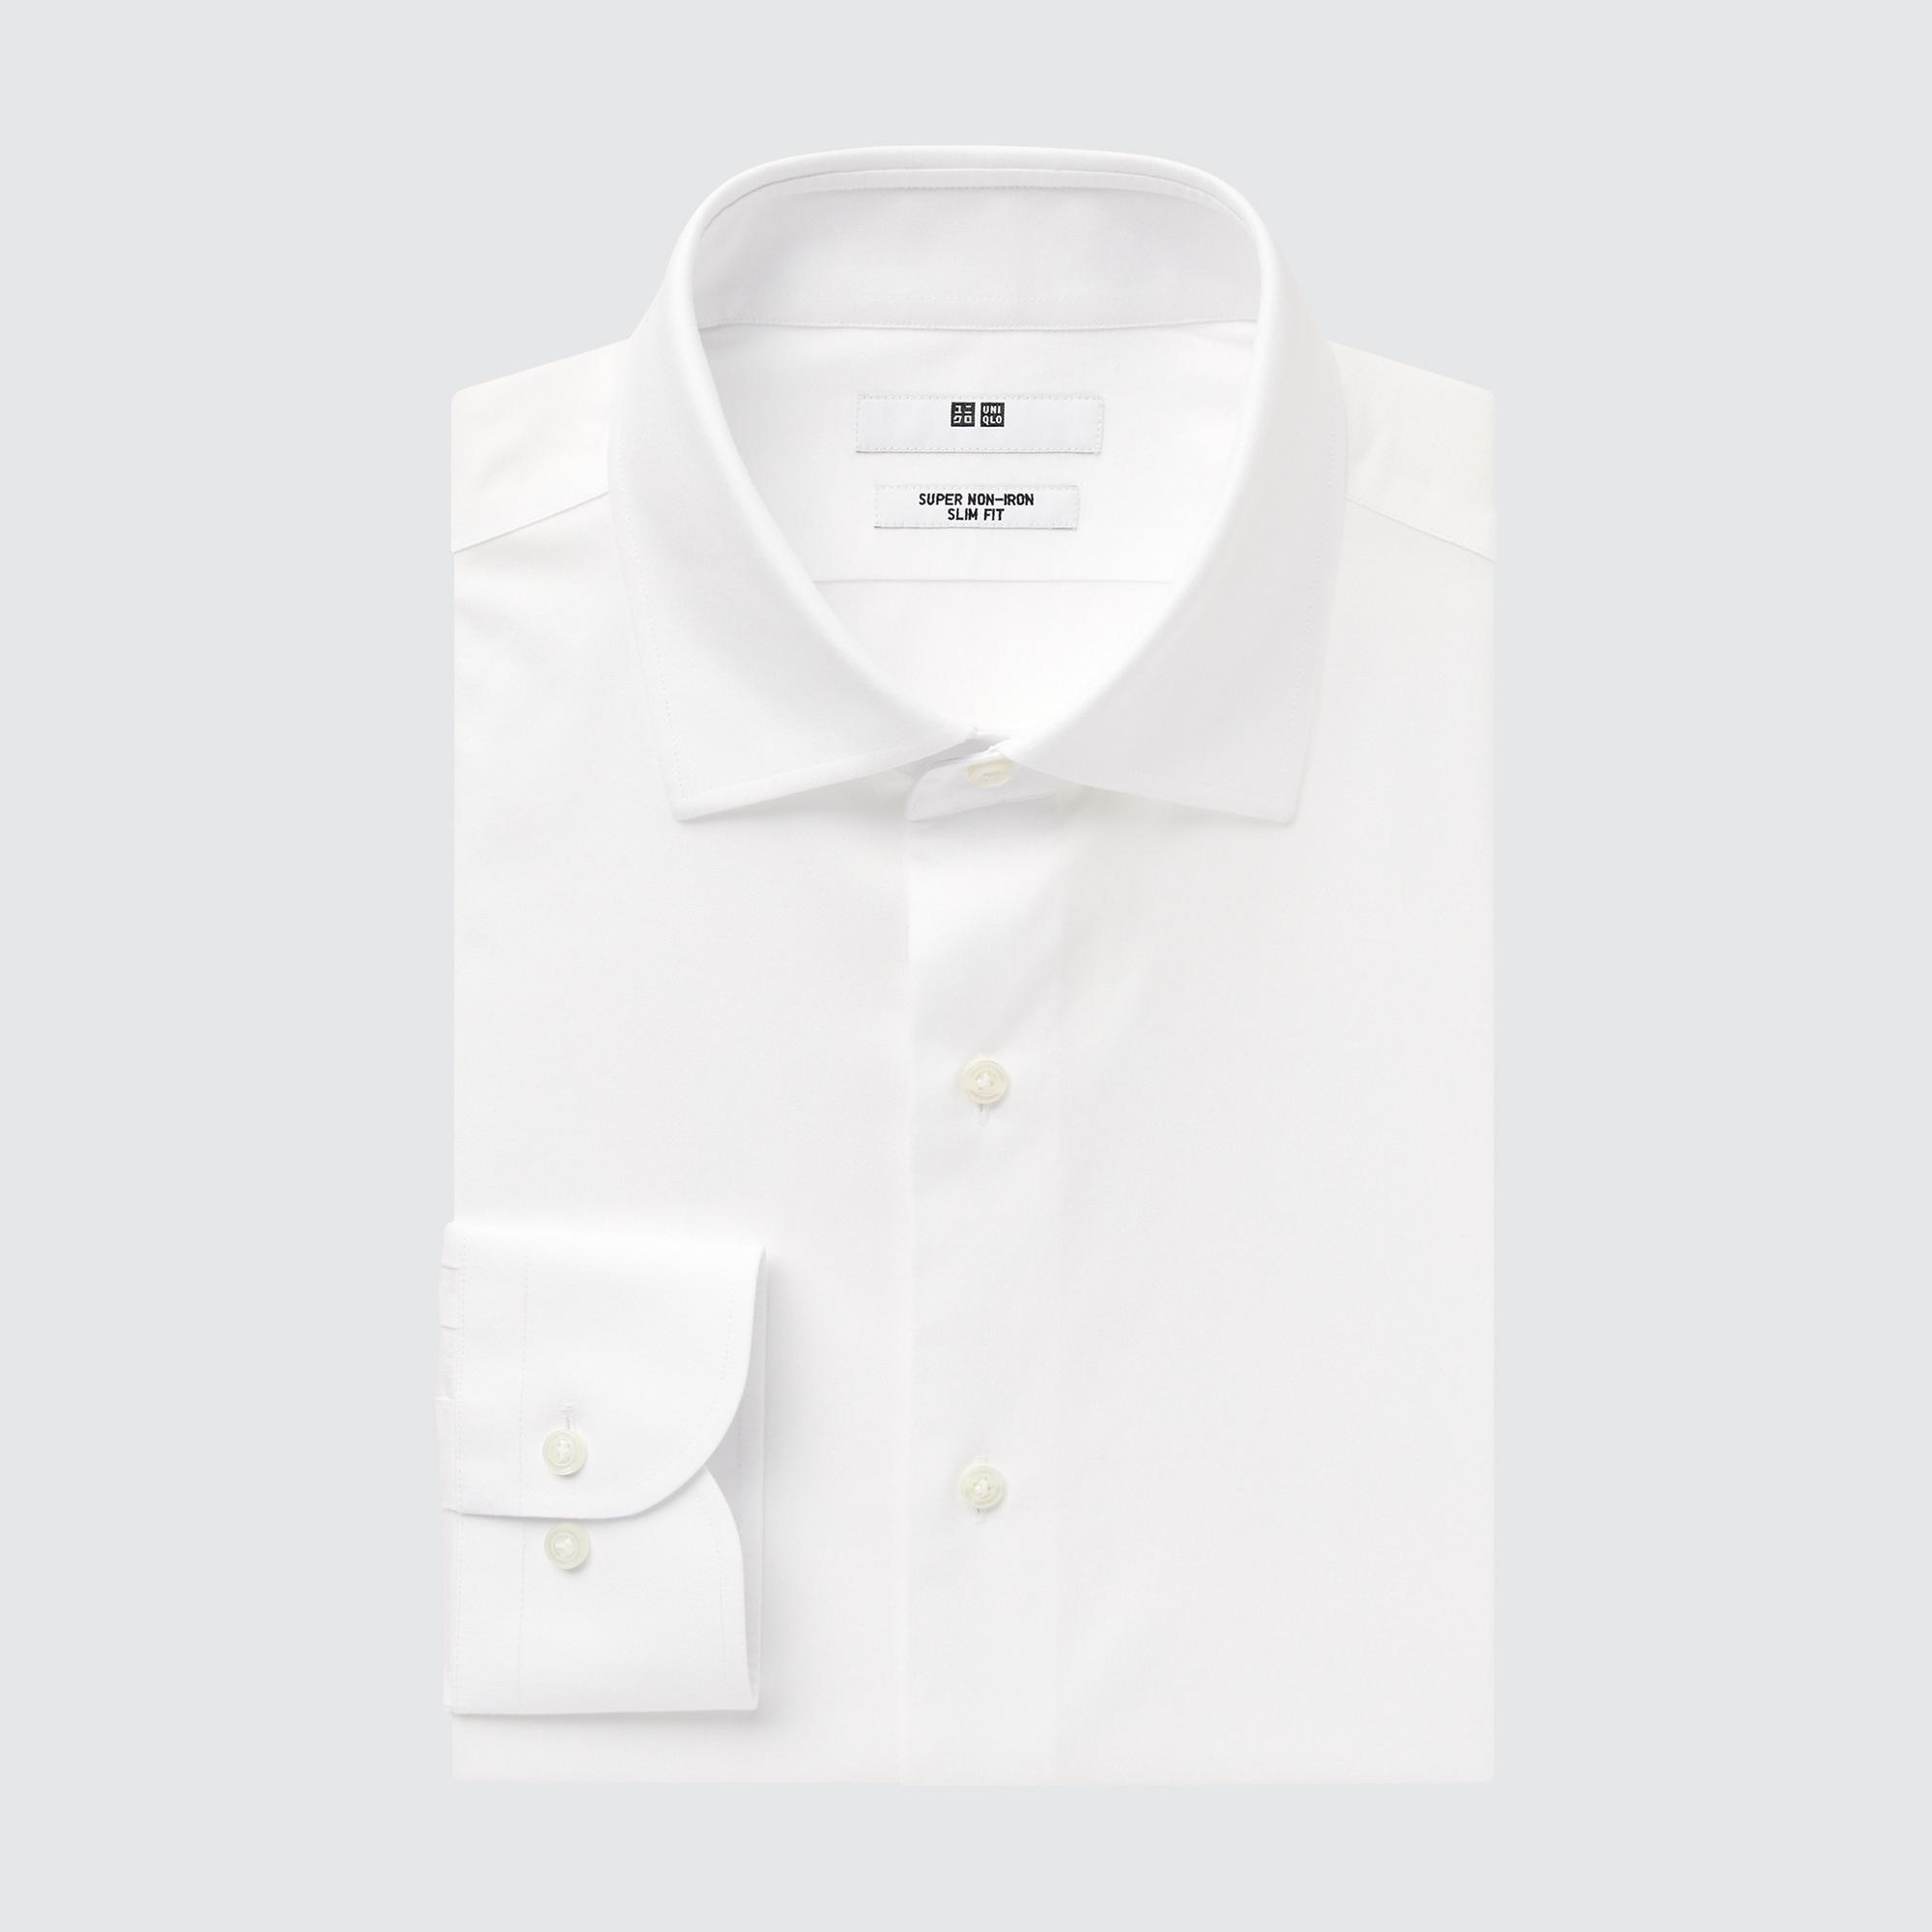 Рубашка мужская UNIQLO 456592COL00 белая L (доставка из-за рубежа)